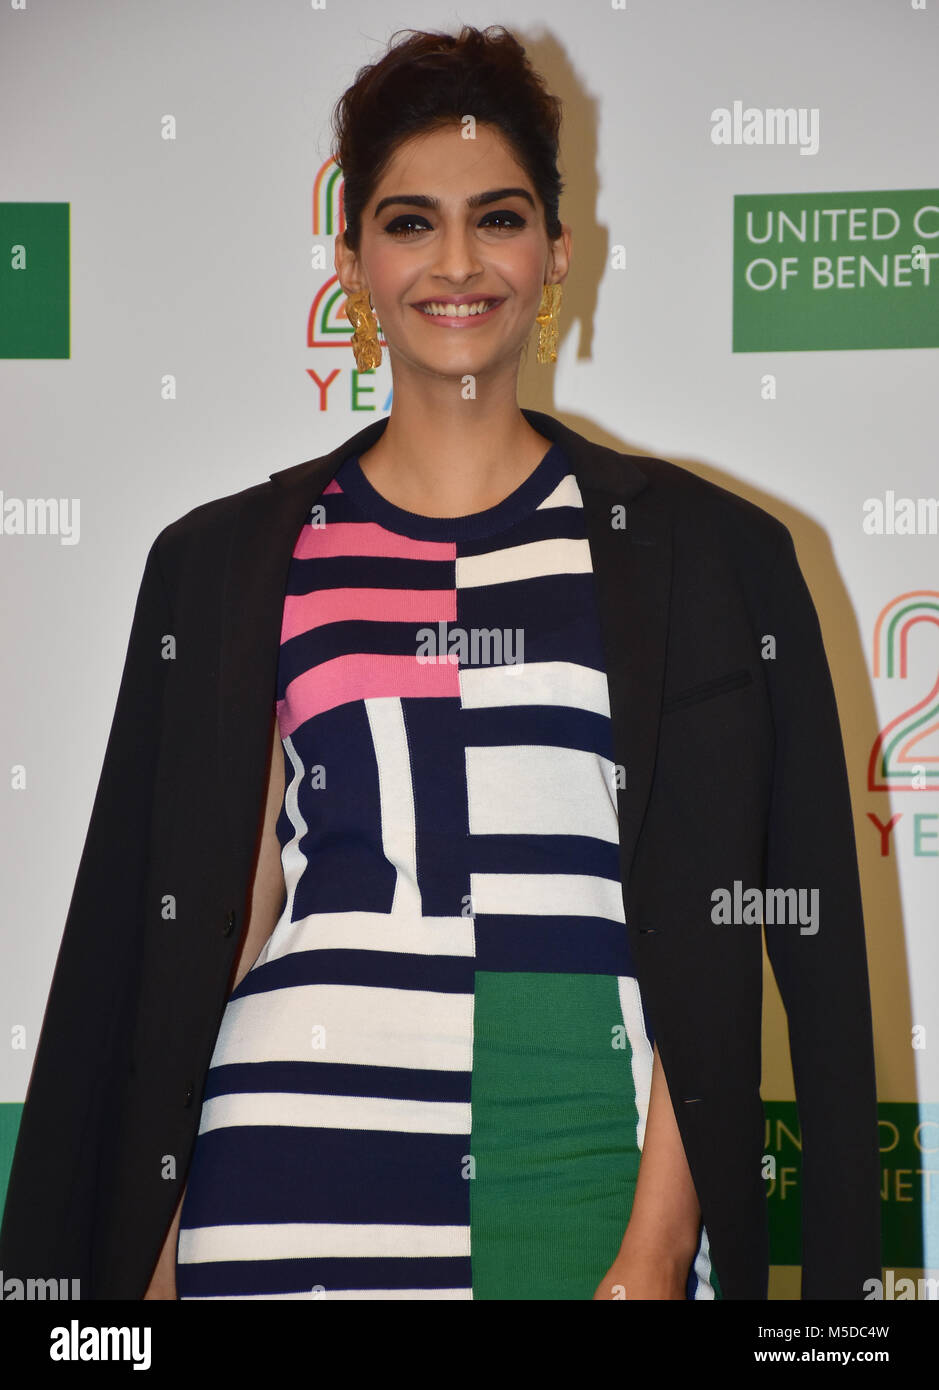 Mumbai, India. 22 Feb 2018. Benetton India celebrar los 25 años de  patrimonio y de los valores en la India con la actriz SONAM KAPOOR en  santacruz tienda en Mumbai. Azhar Khan/Alamy